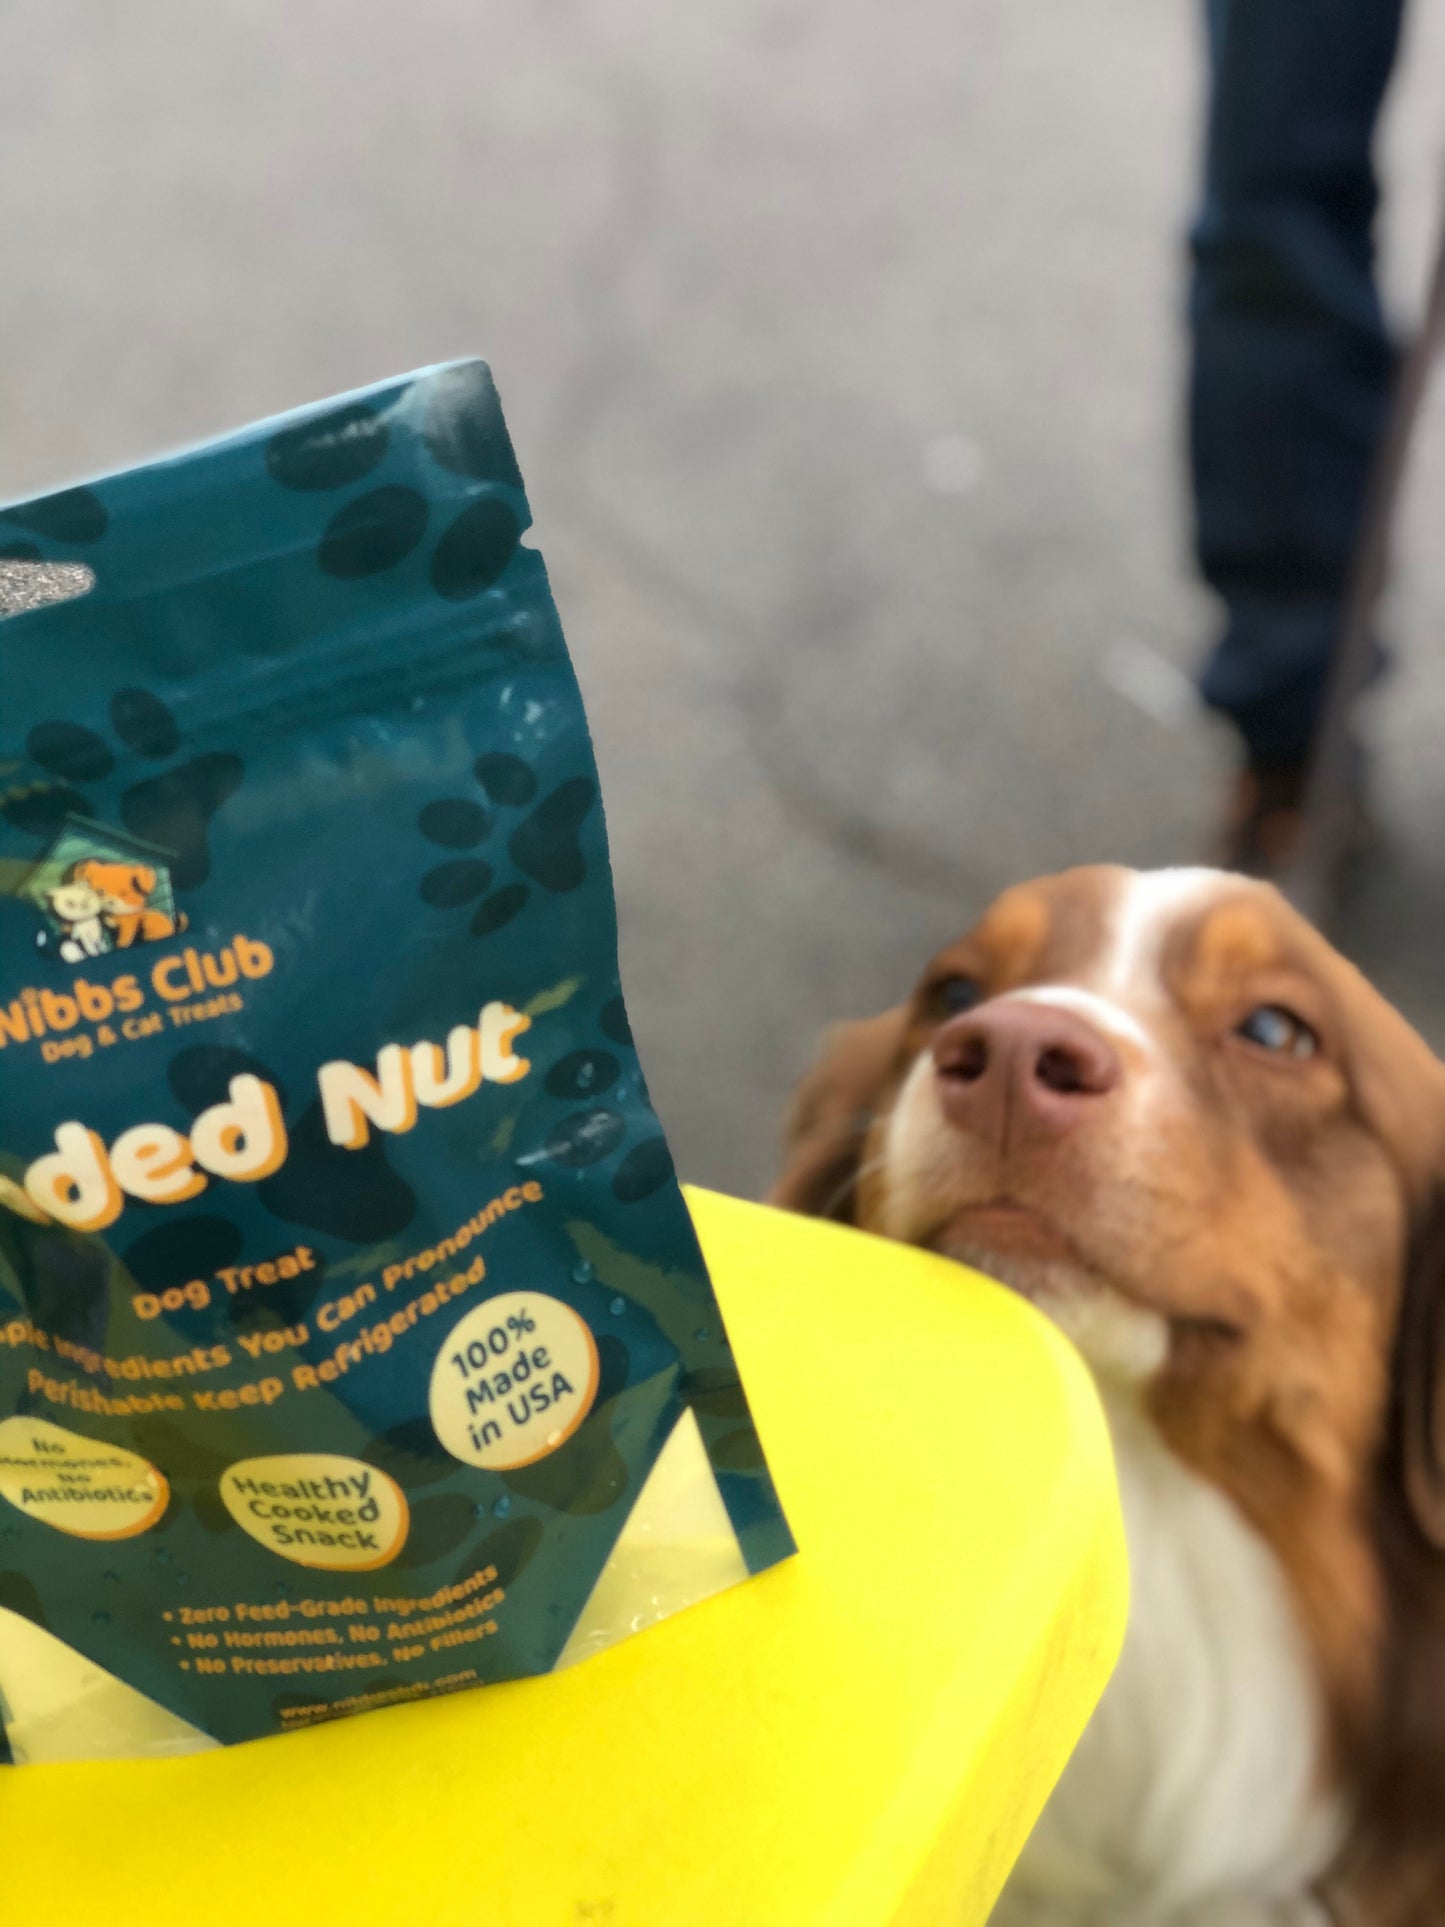 Loaded Nut Dog Treats